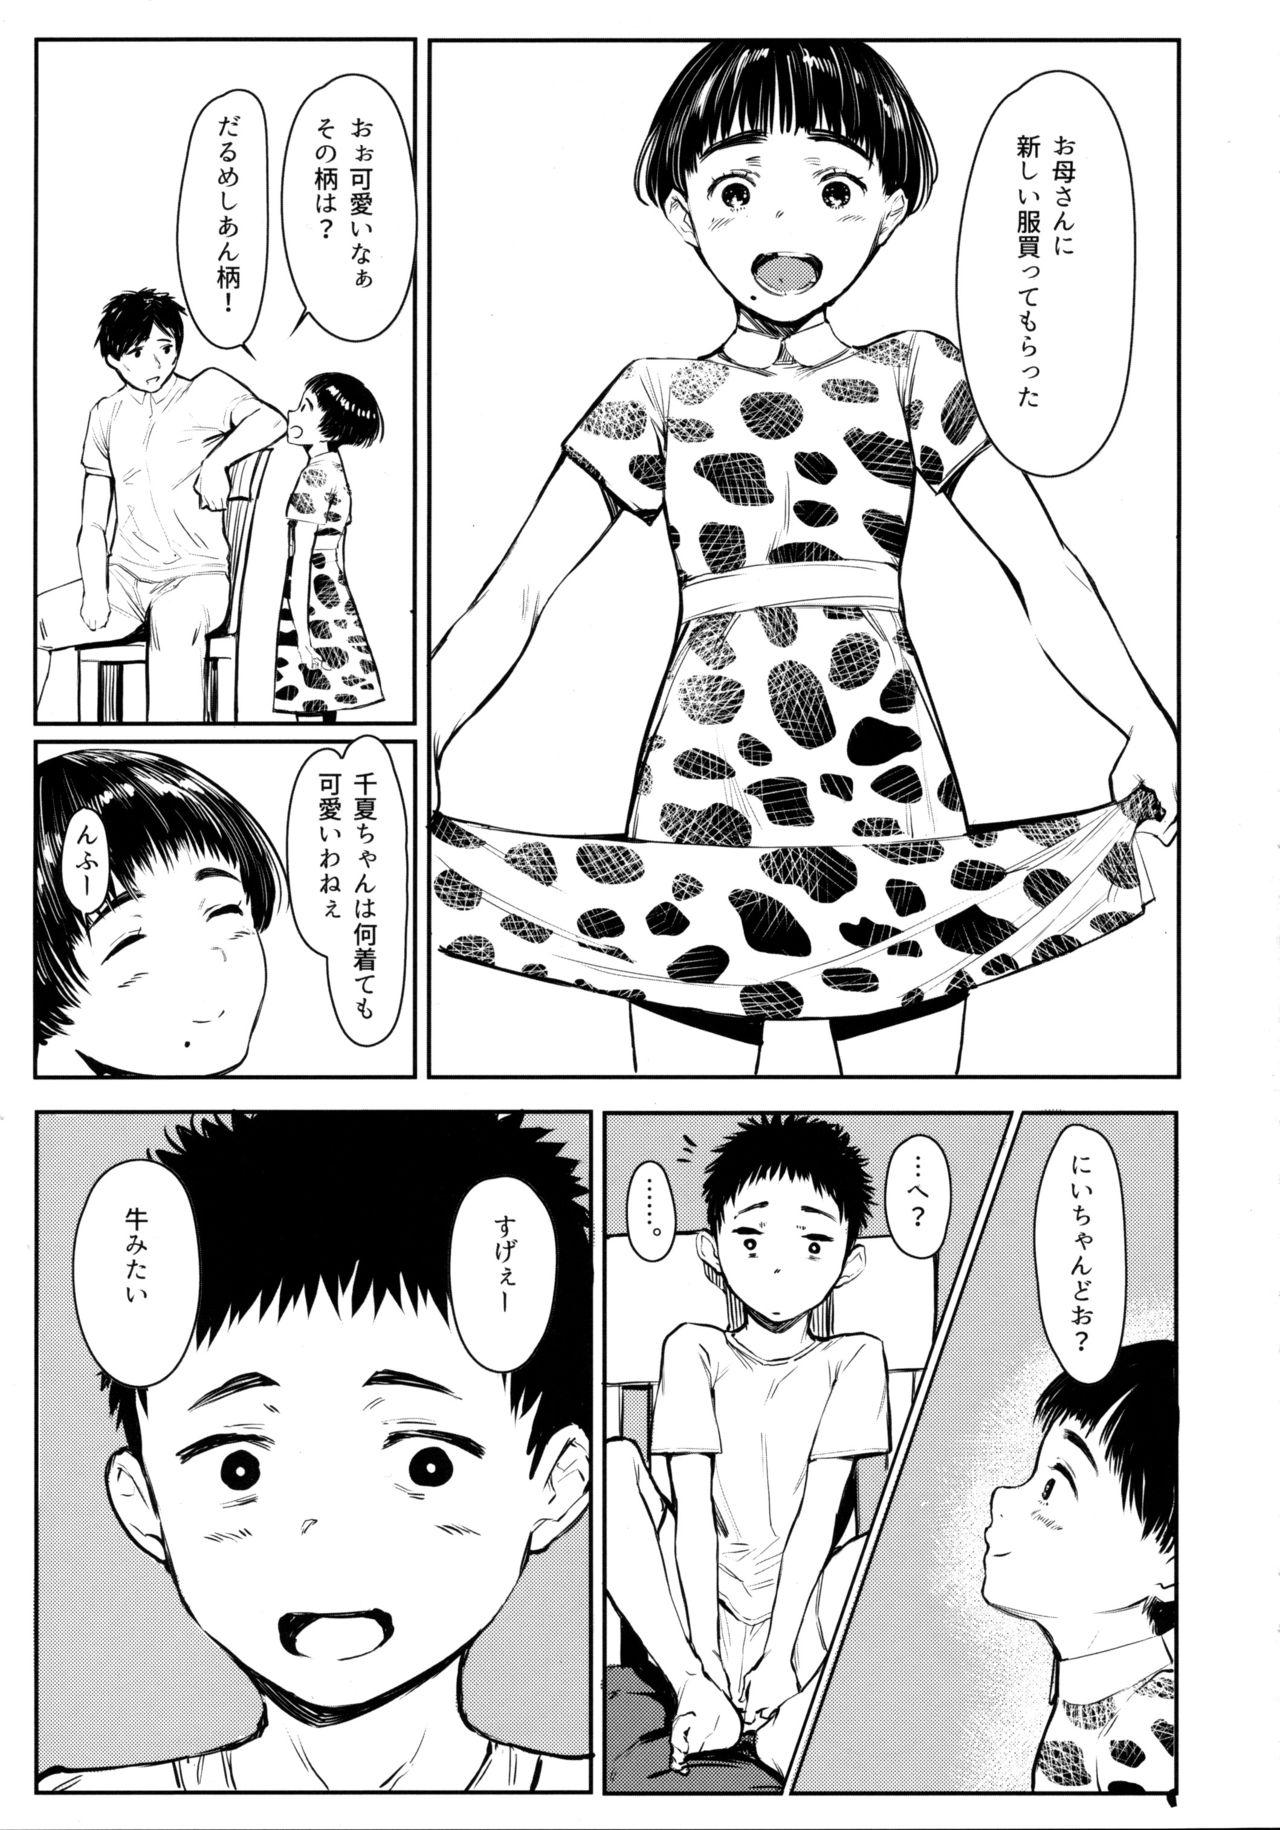 Transvestite Tonari no Chinatsu-chan R 05 - Original Studs - Page 6